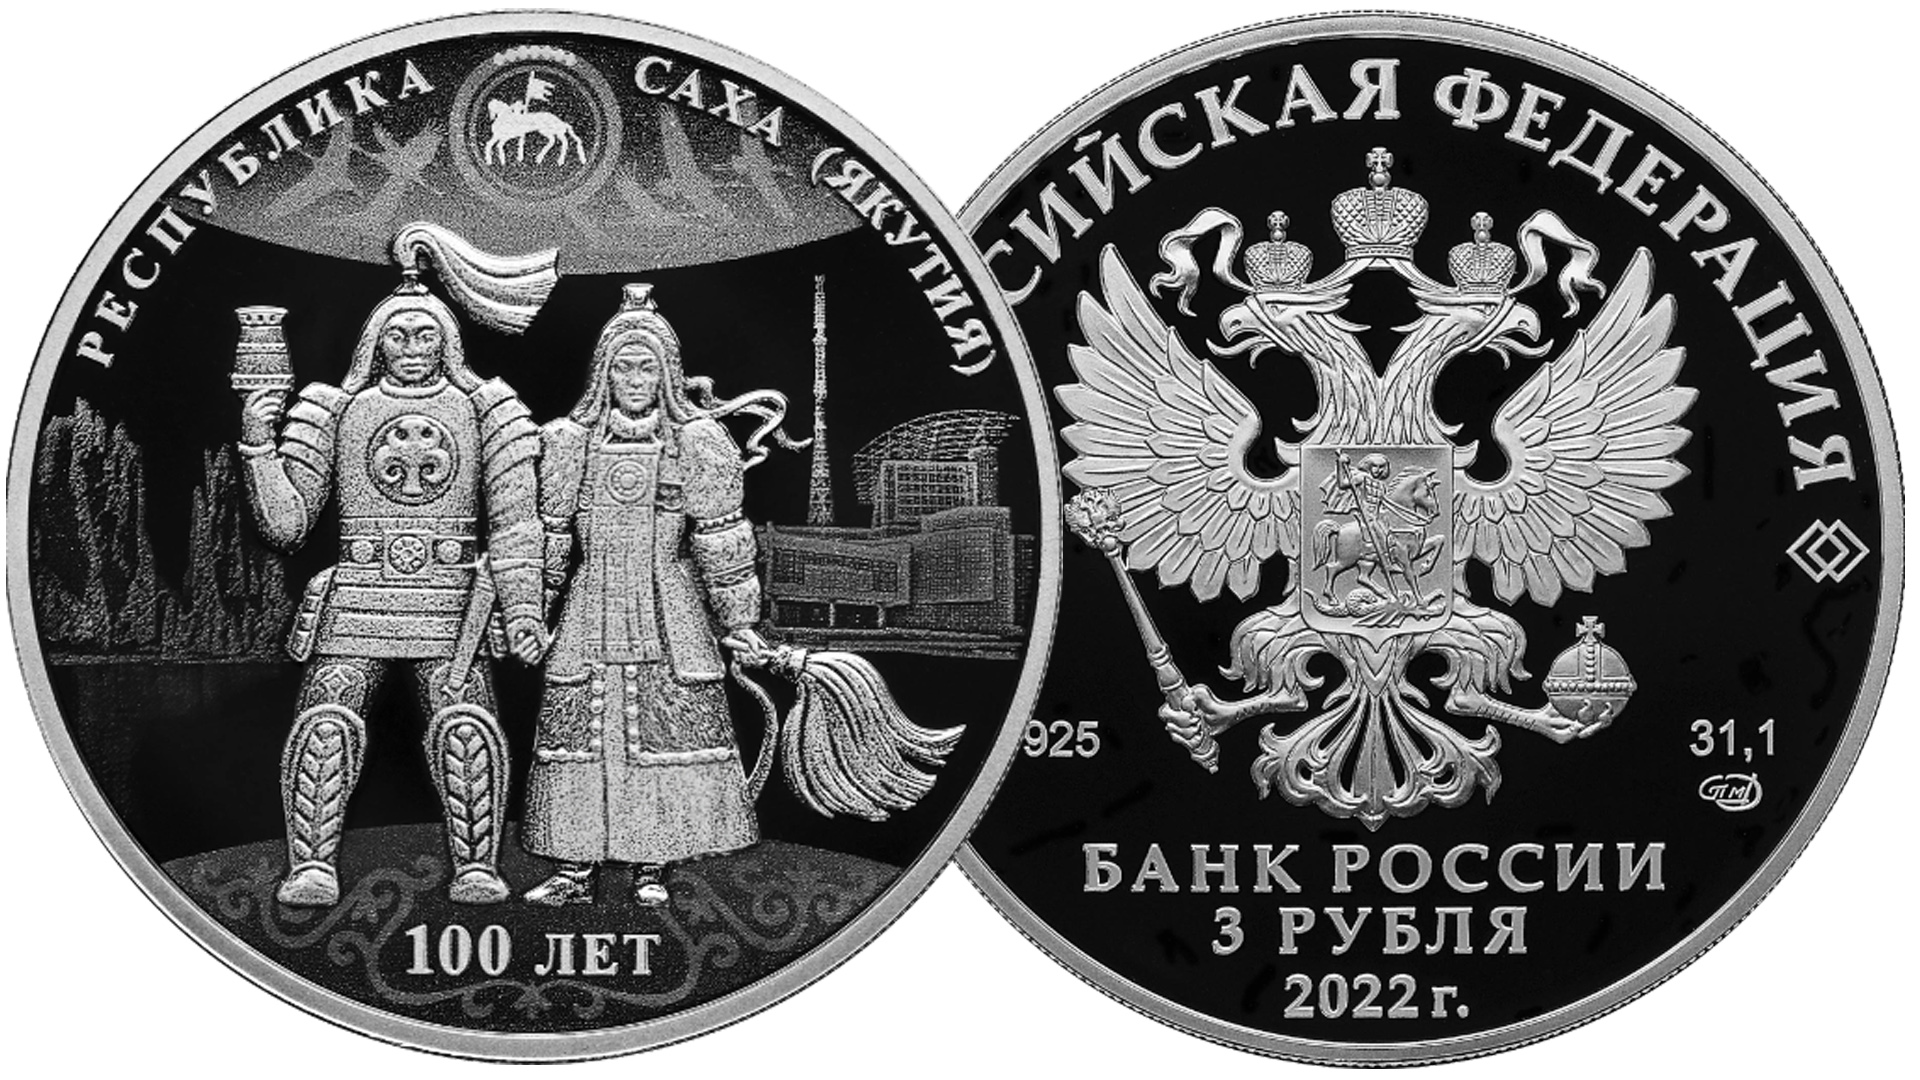 Новые памятные монеты России выпуска ФЕВРАЛЬ 2022 года.